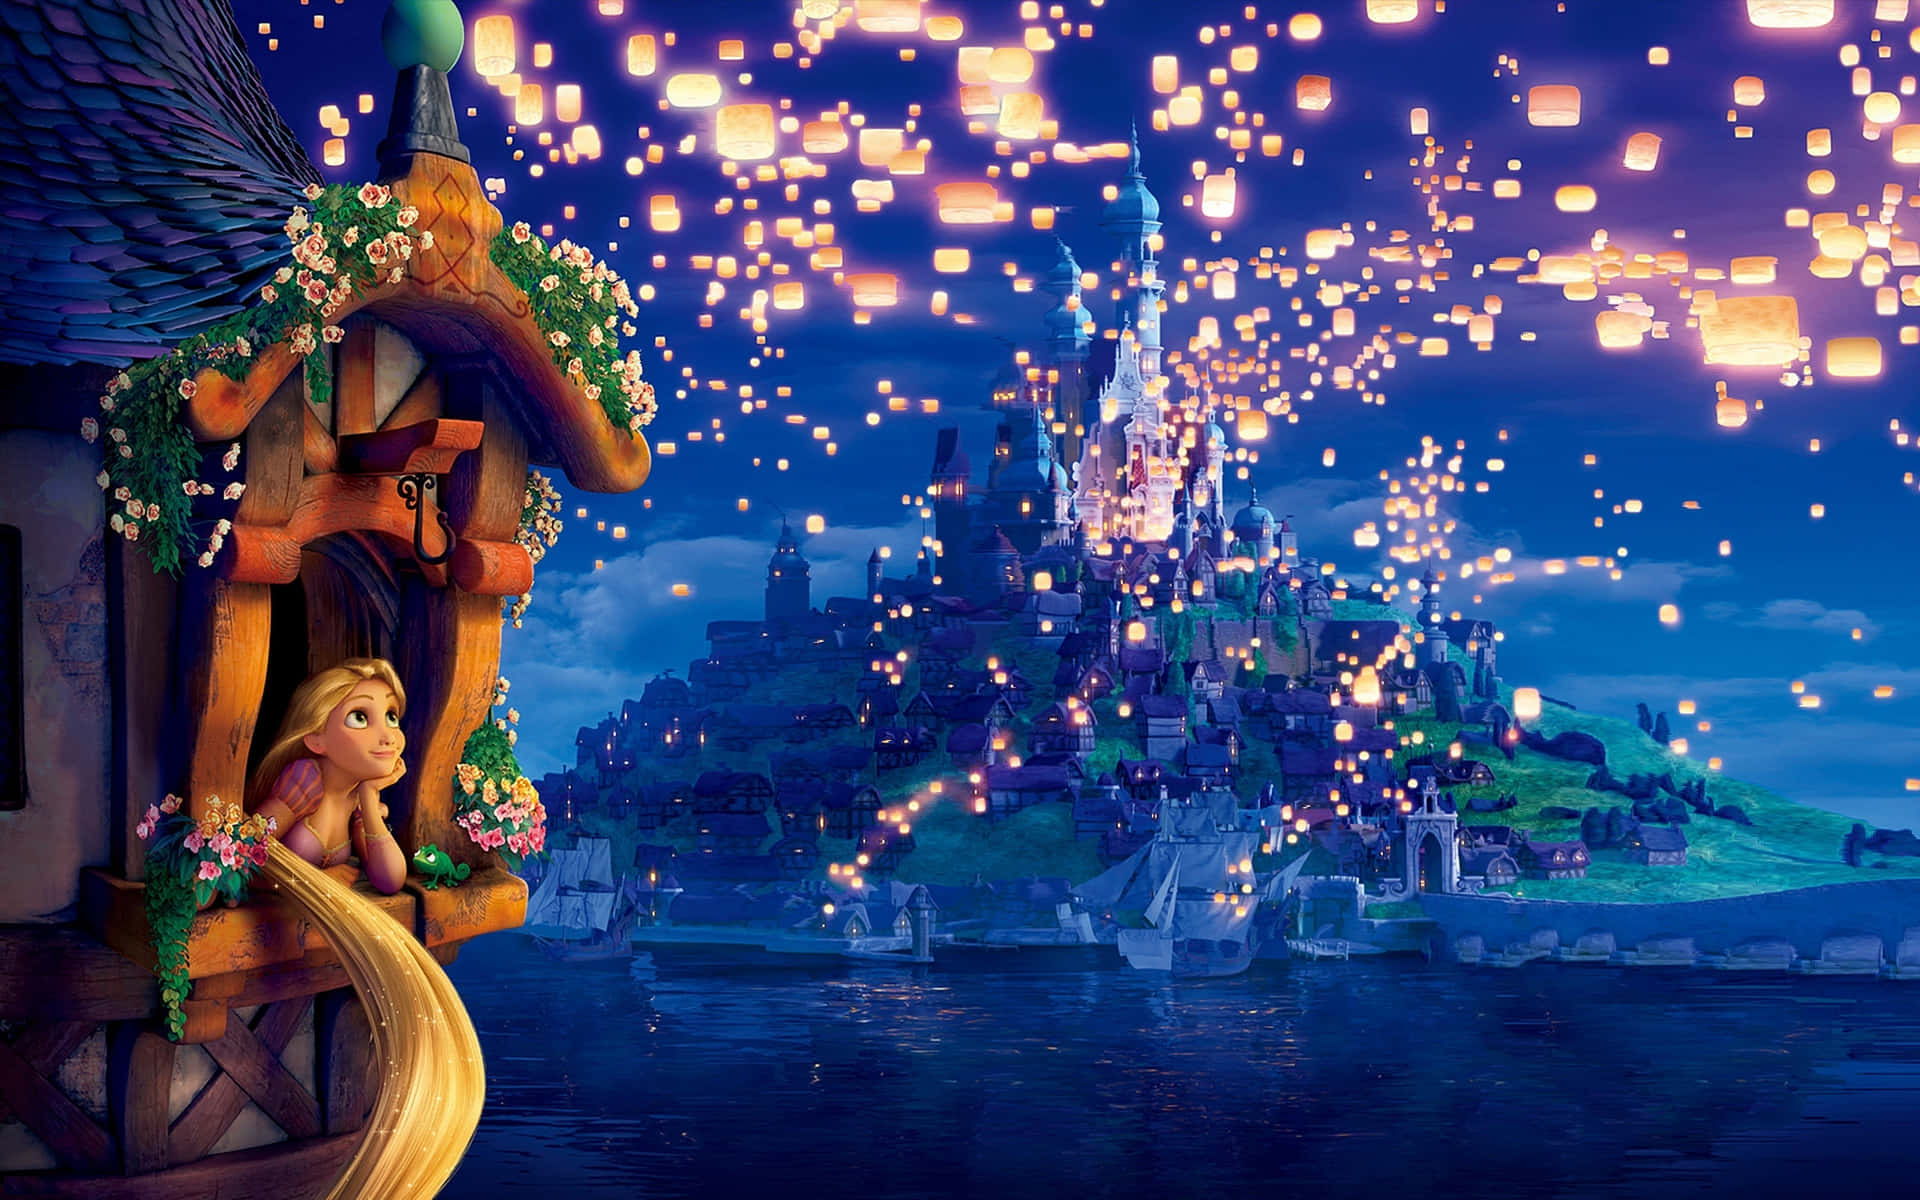 Rapunzelexibiu Seu Icônico Cabelo Dourado No Filme Da Disney, Enrolados.